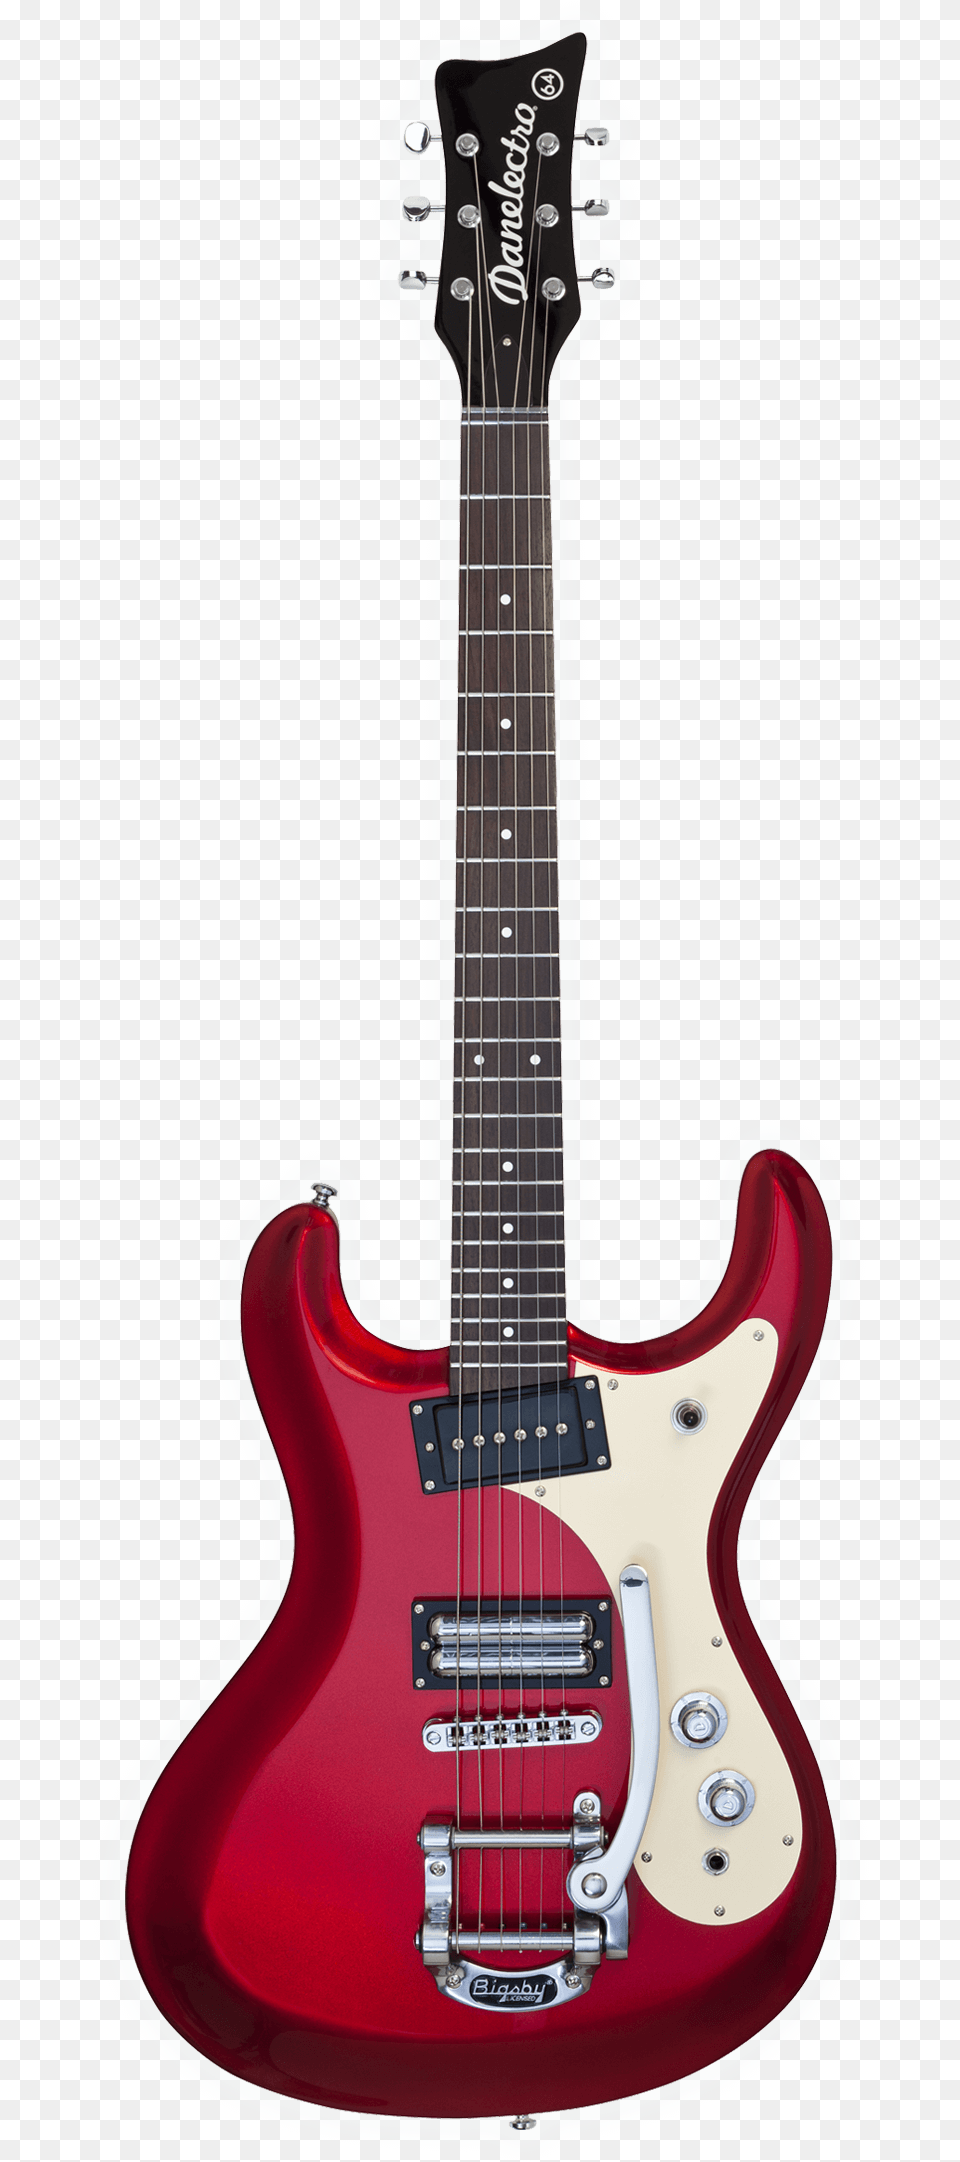 Danelectro 64 Bass, Electric Guitar, Guitar, Musical Instrument, Bass Guitar Png Image